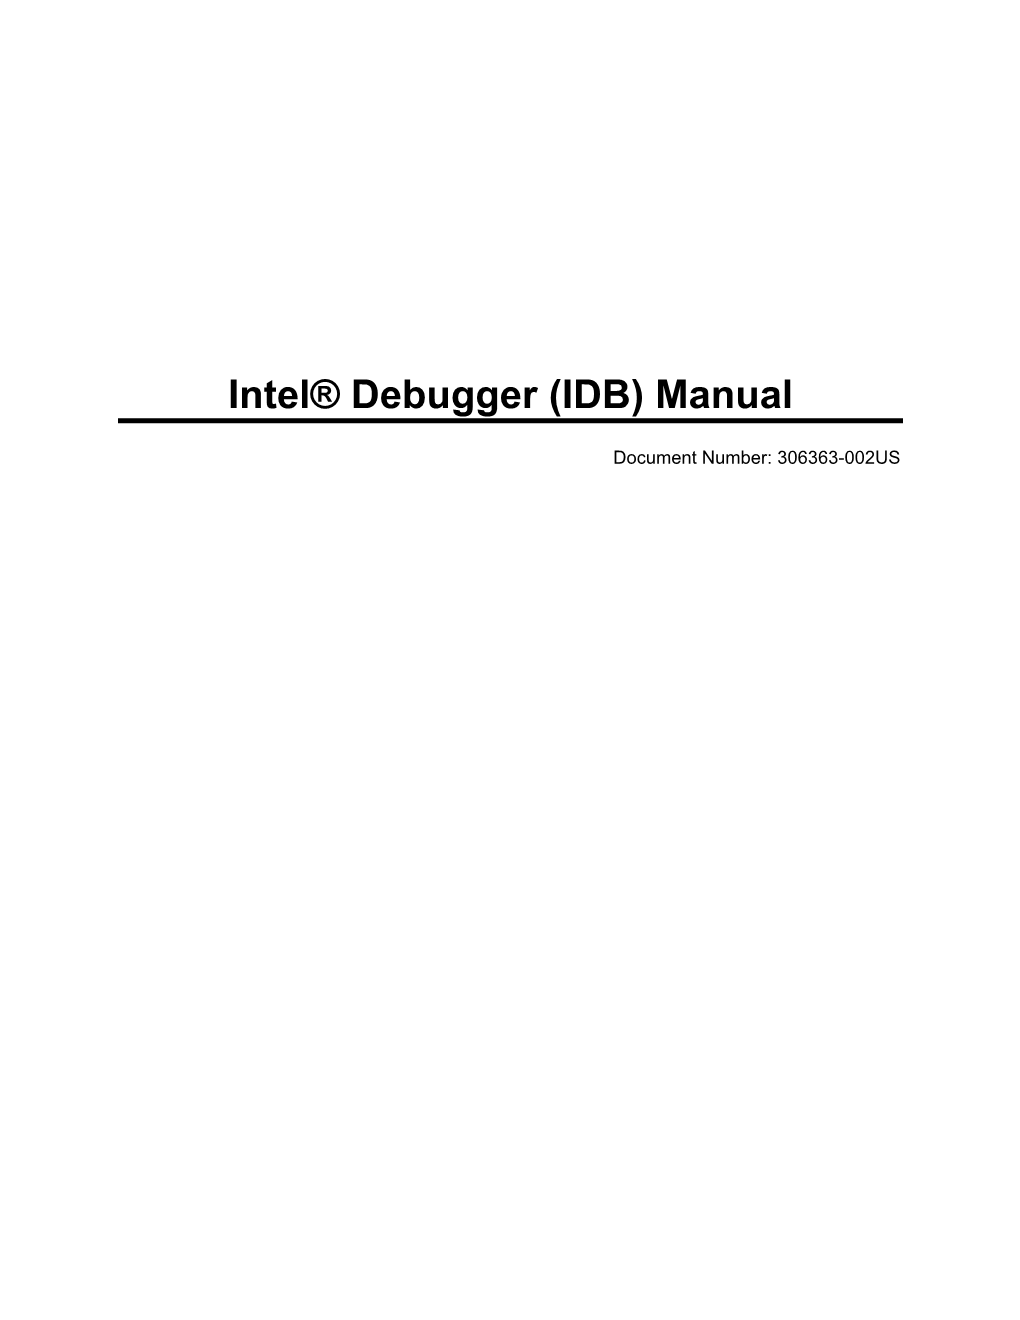 Intel(R) Debugger (IDB) Manual